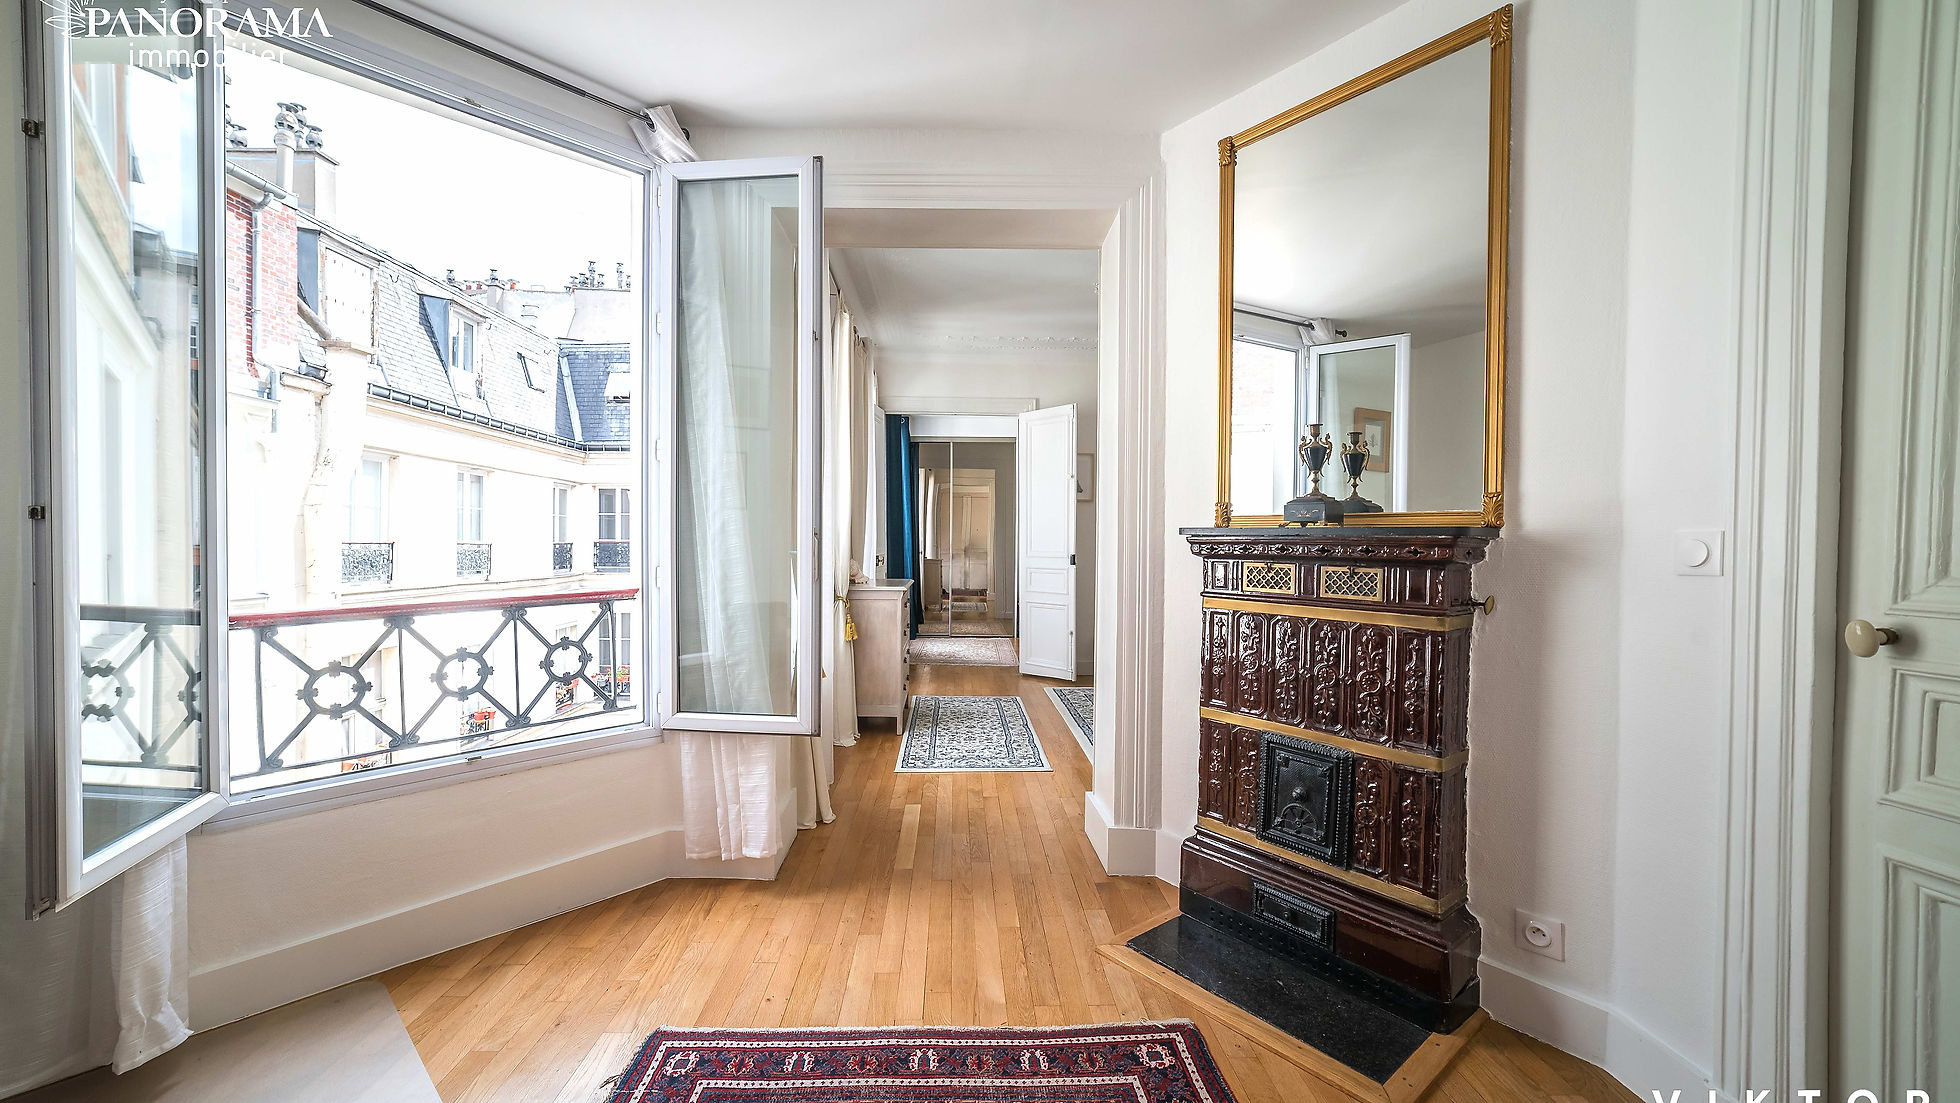 Paris 8ème - Madeleine : Appartement 47m2 au 4ème étage | Panorama Immobilier